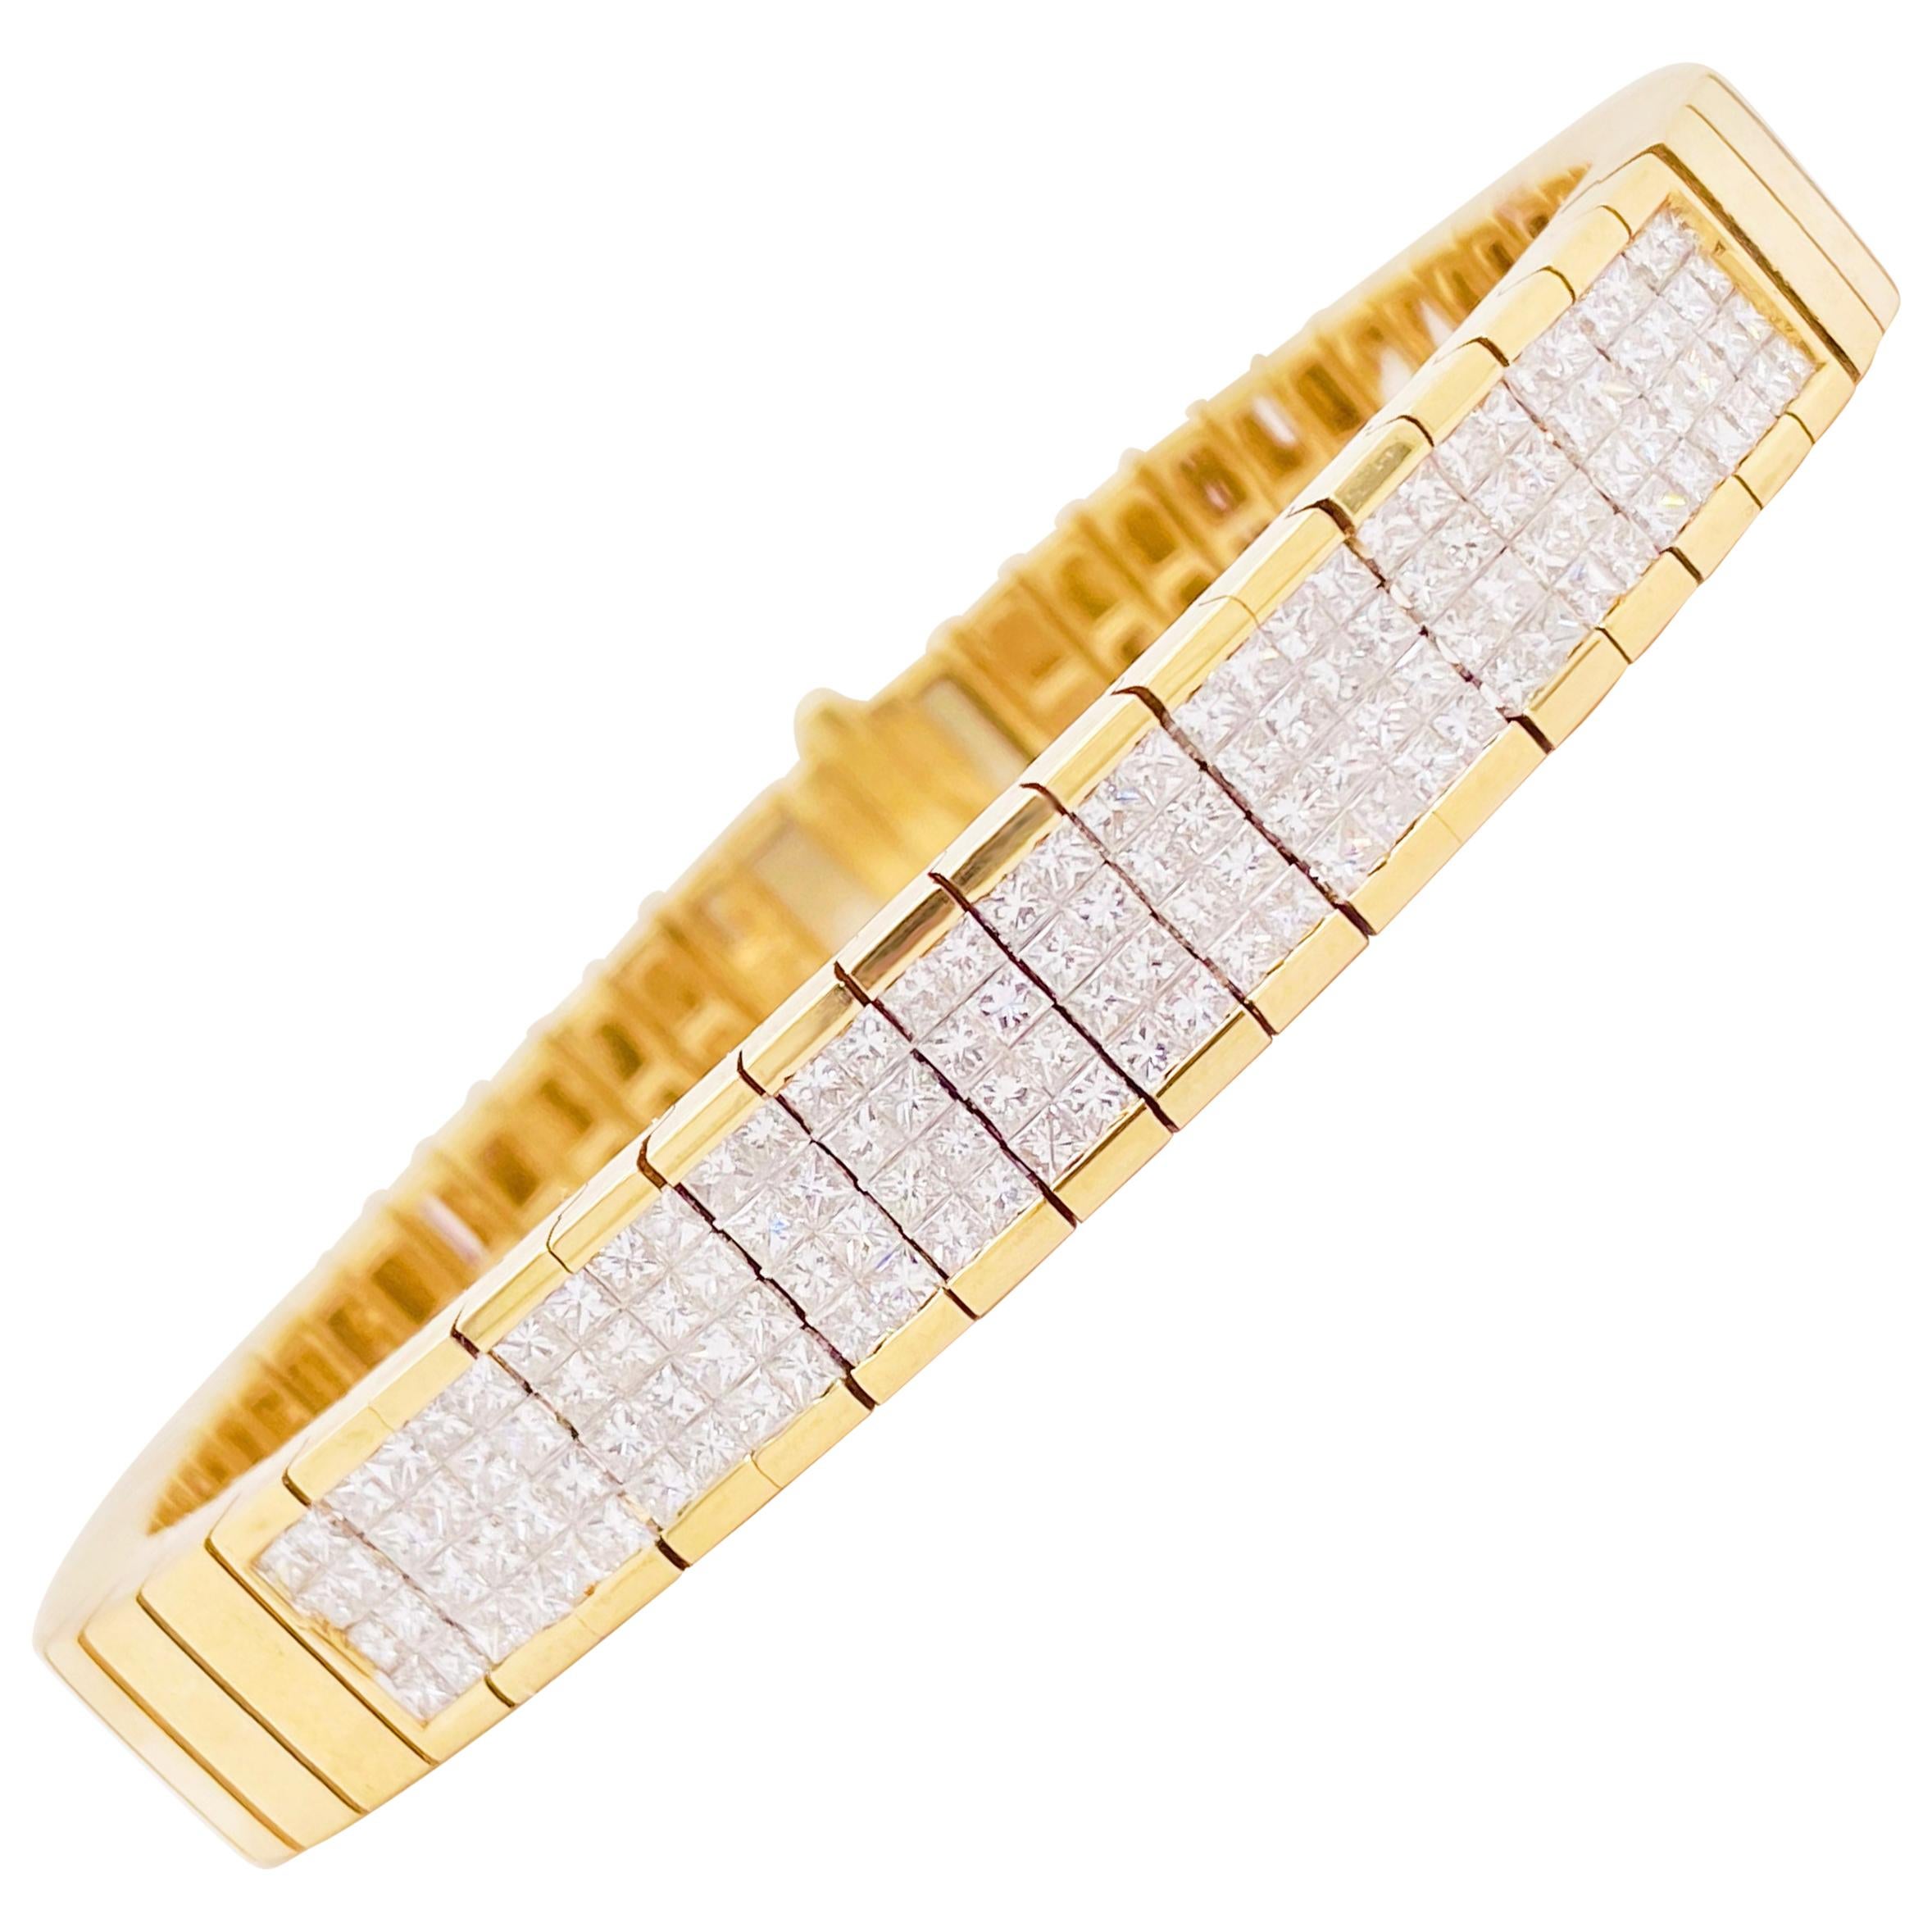 4 Carat Princess Cut Diamond Paved Gold Bracelet, 4.00 Carat Total Weight Dia For Sale